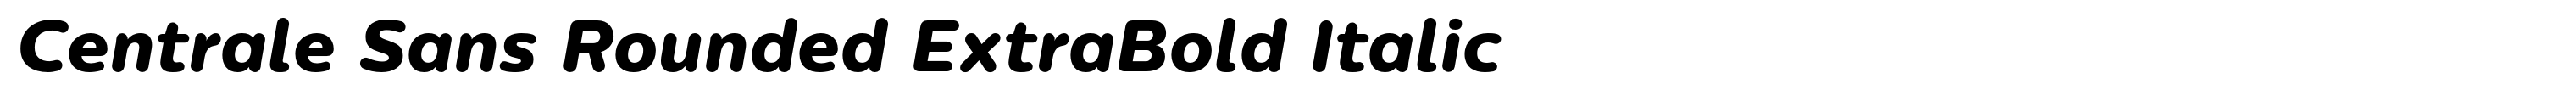 Centrale Sans Rounded ExtraBold Italic